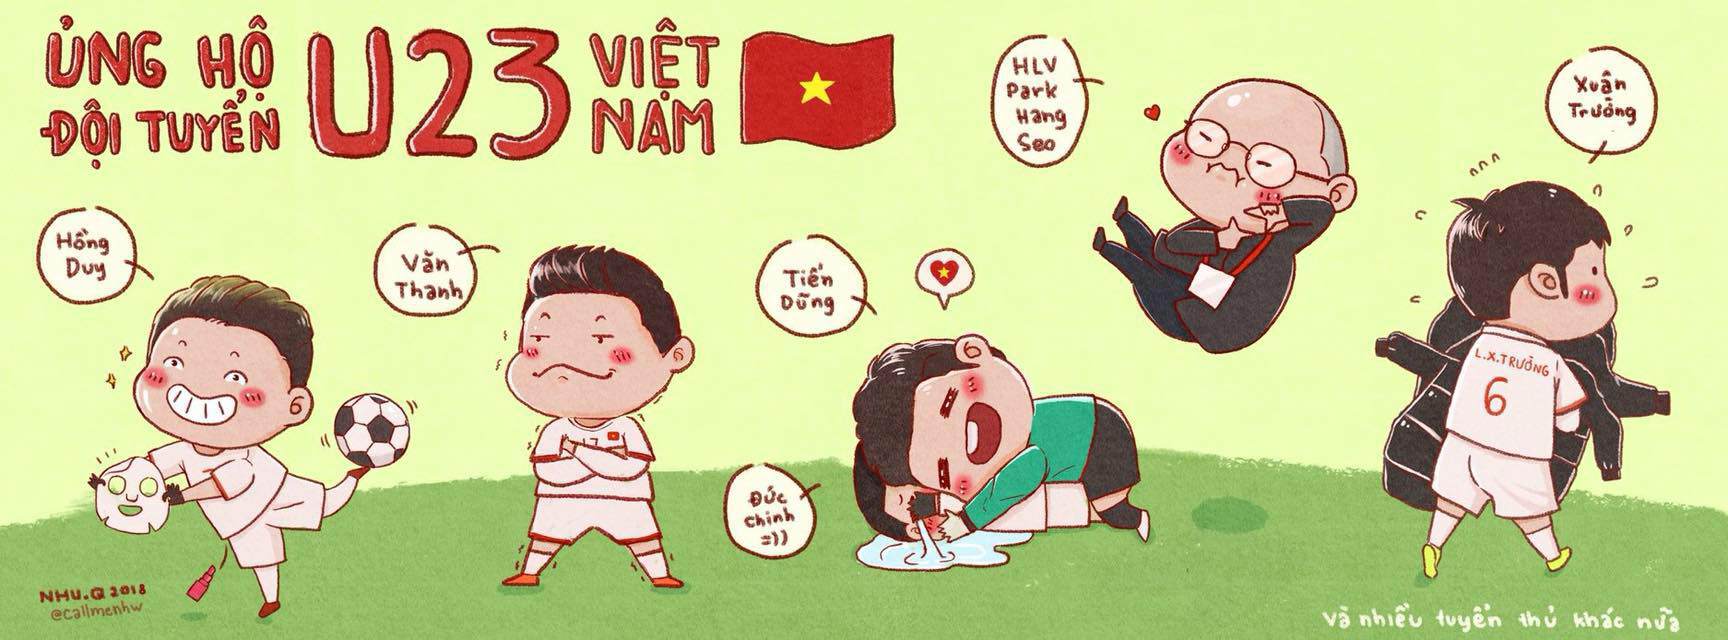 Hình đội tuyển Việt Nam đáng yêu chibi